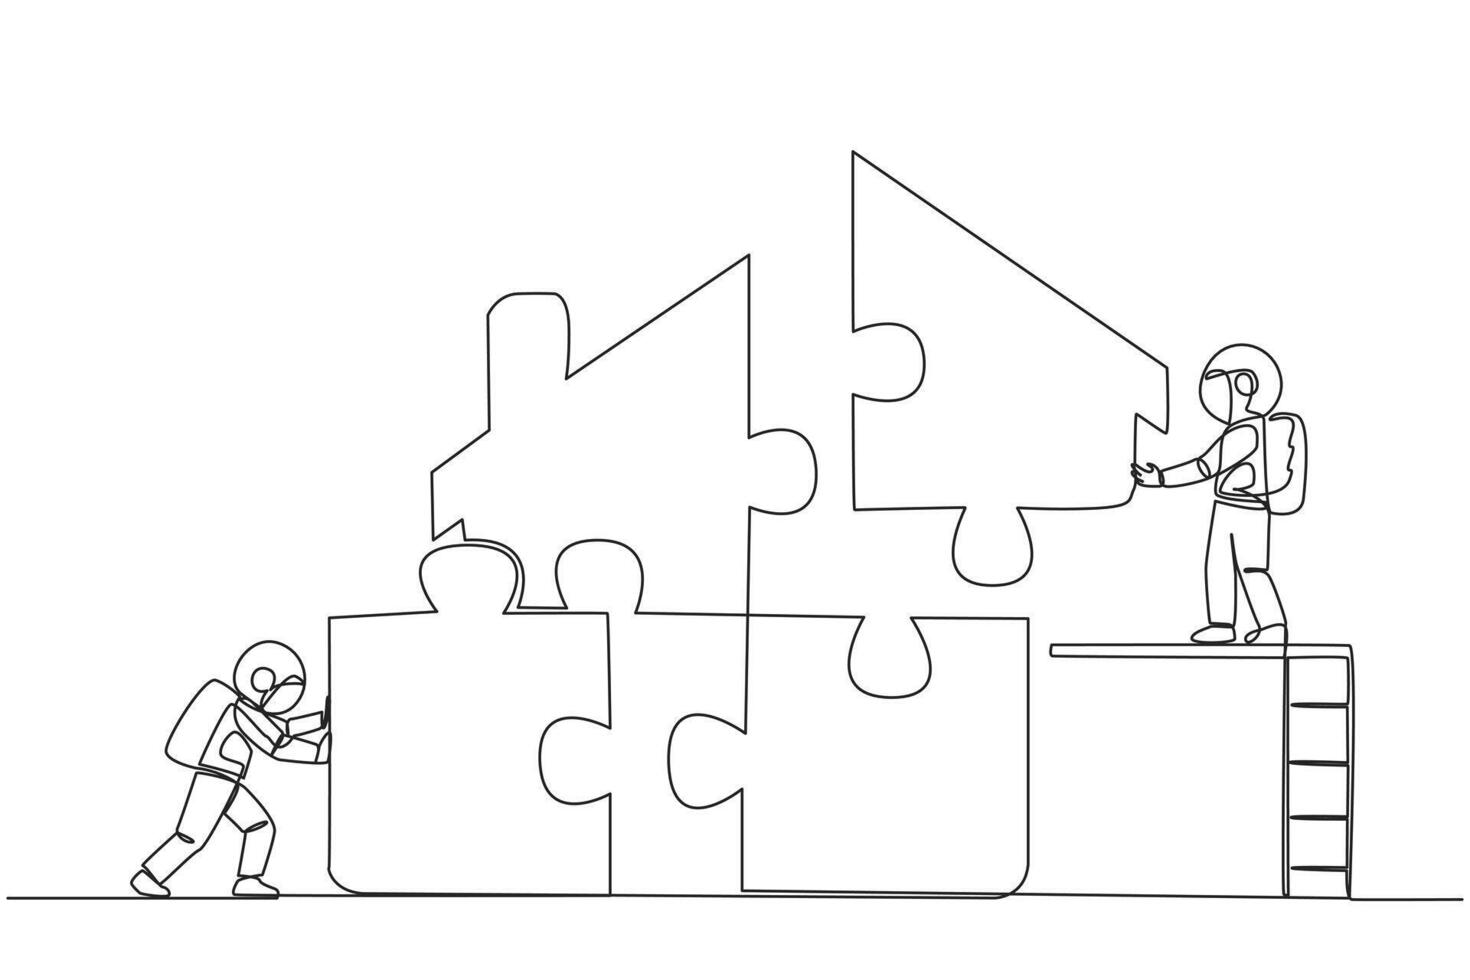 doorlopend een lijn tekening twee astronauten zetten samen plein puzzel in de vorm van huis. samenspel en ladders maken zetten samen puzzels zelfs gemakkelijker. single lijn trek ontwerp vector illustratie